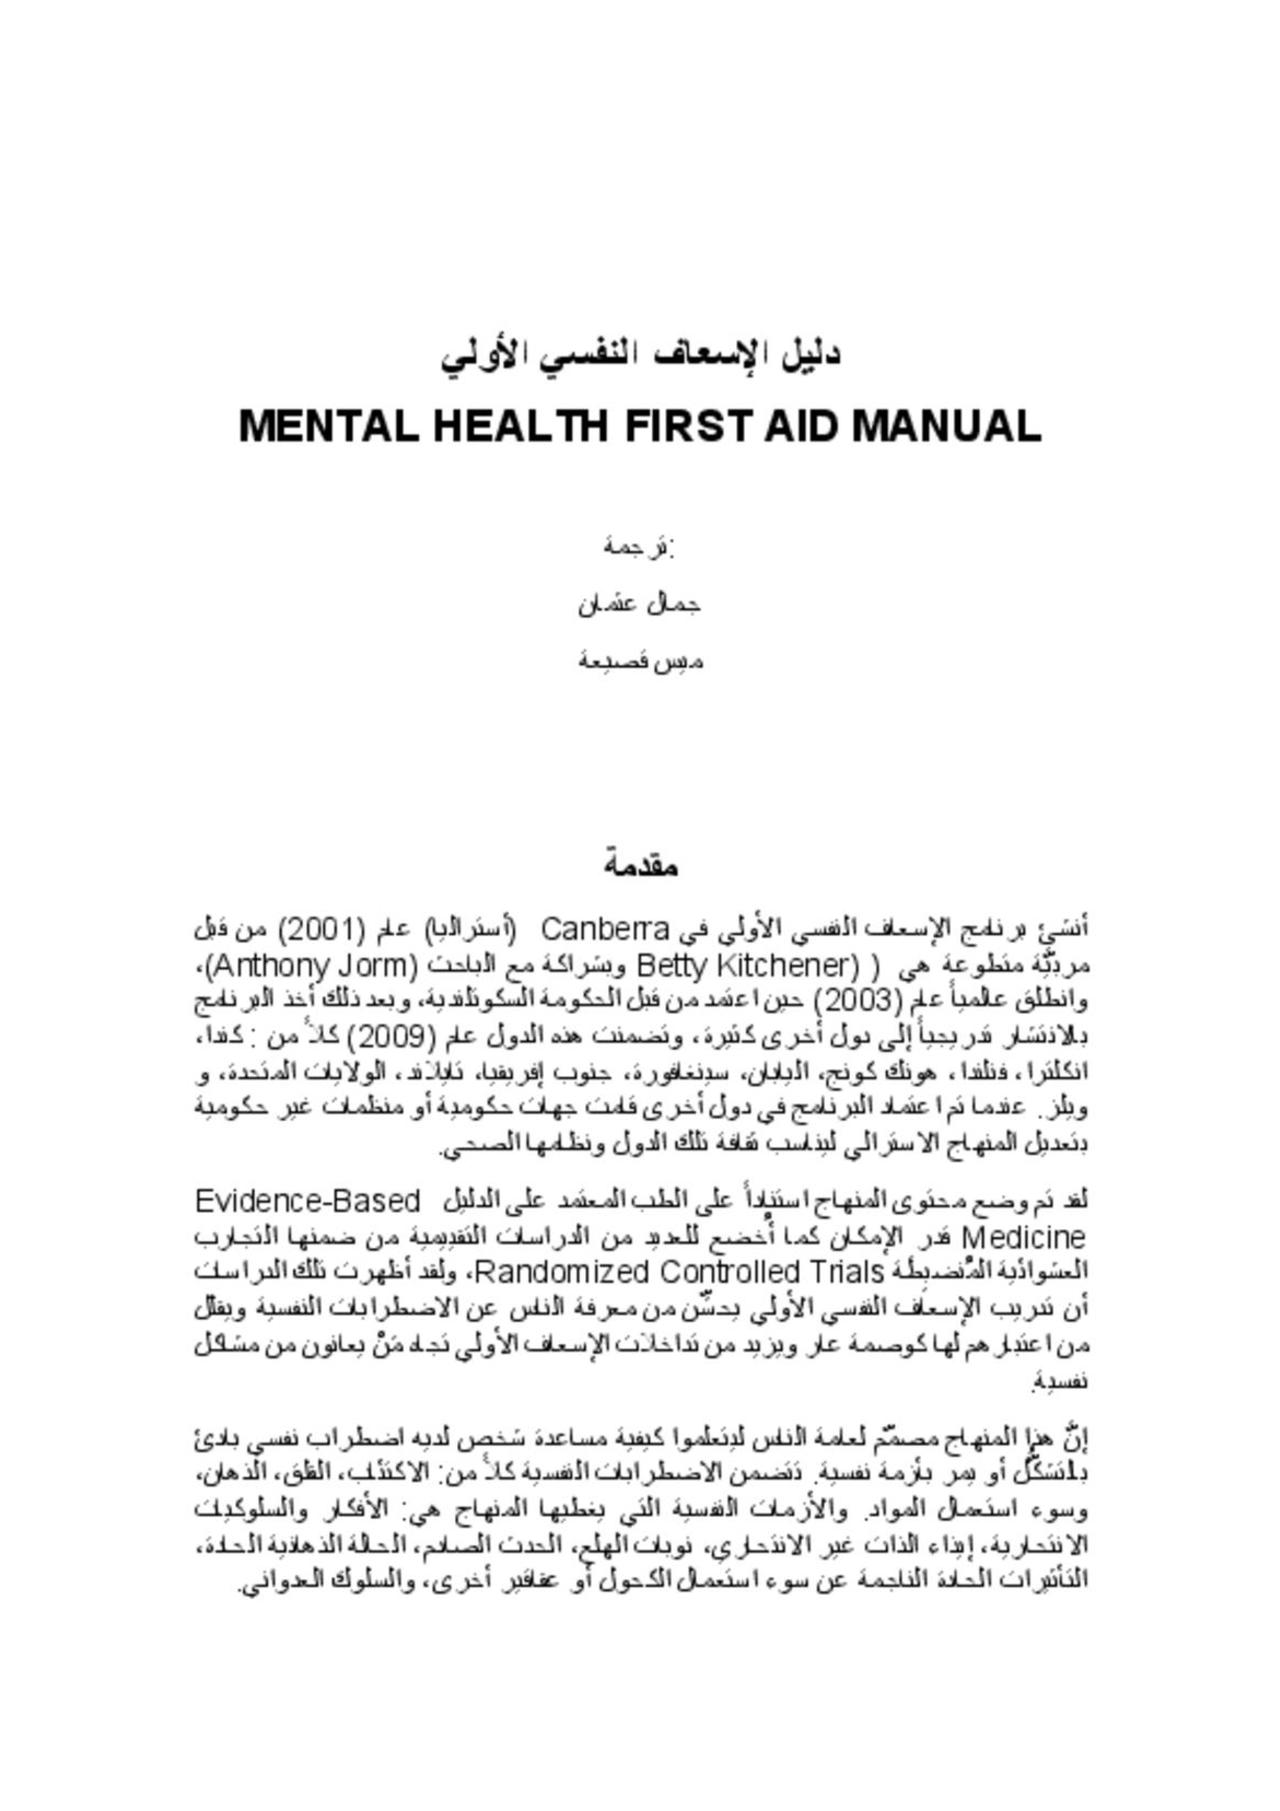 دليل الإسعاف النفسي الأولي MENTAL HEALTH FIRST AID MANUAL